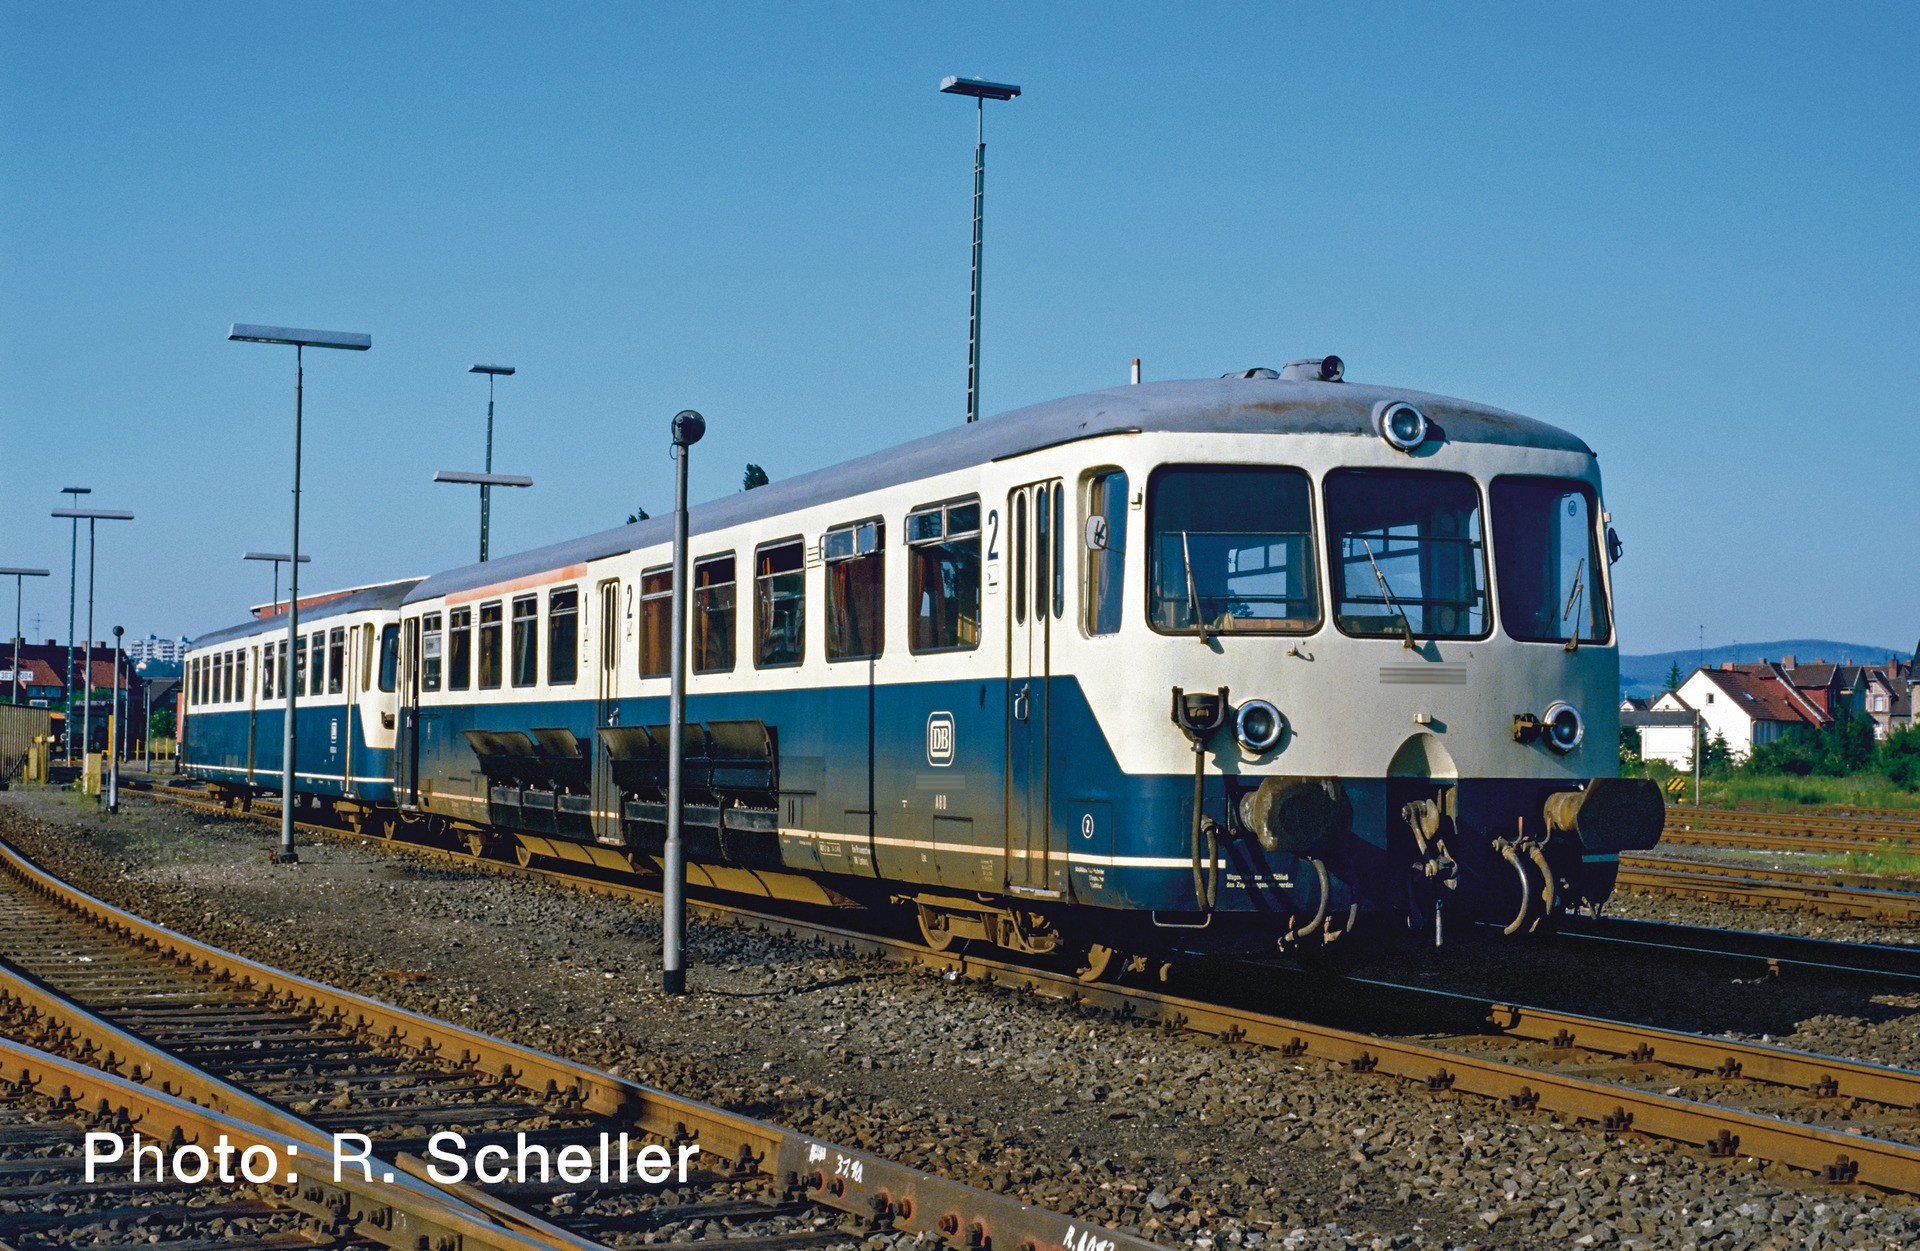  Roco-Fleischmann Roco-Fleischmann 72083-H0 - Trains miniatures : loco